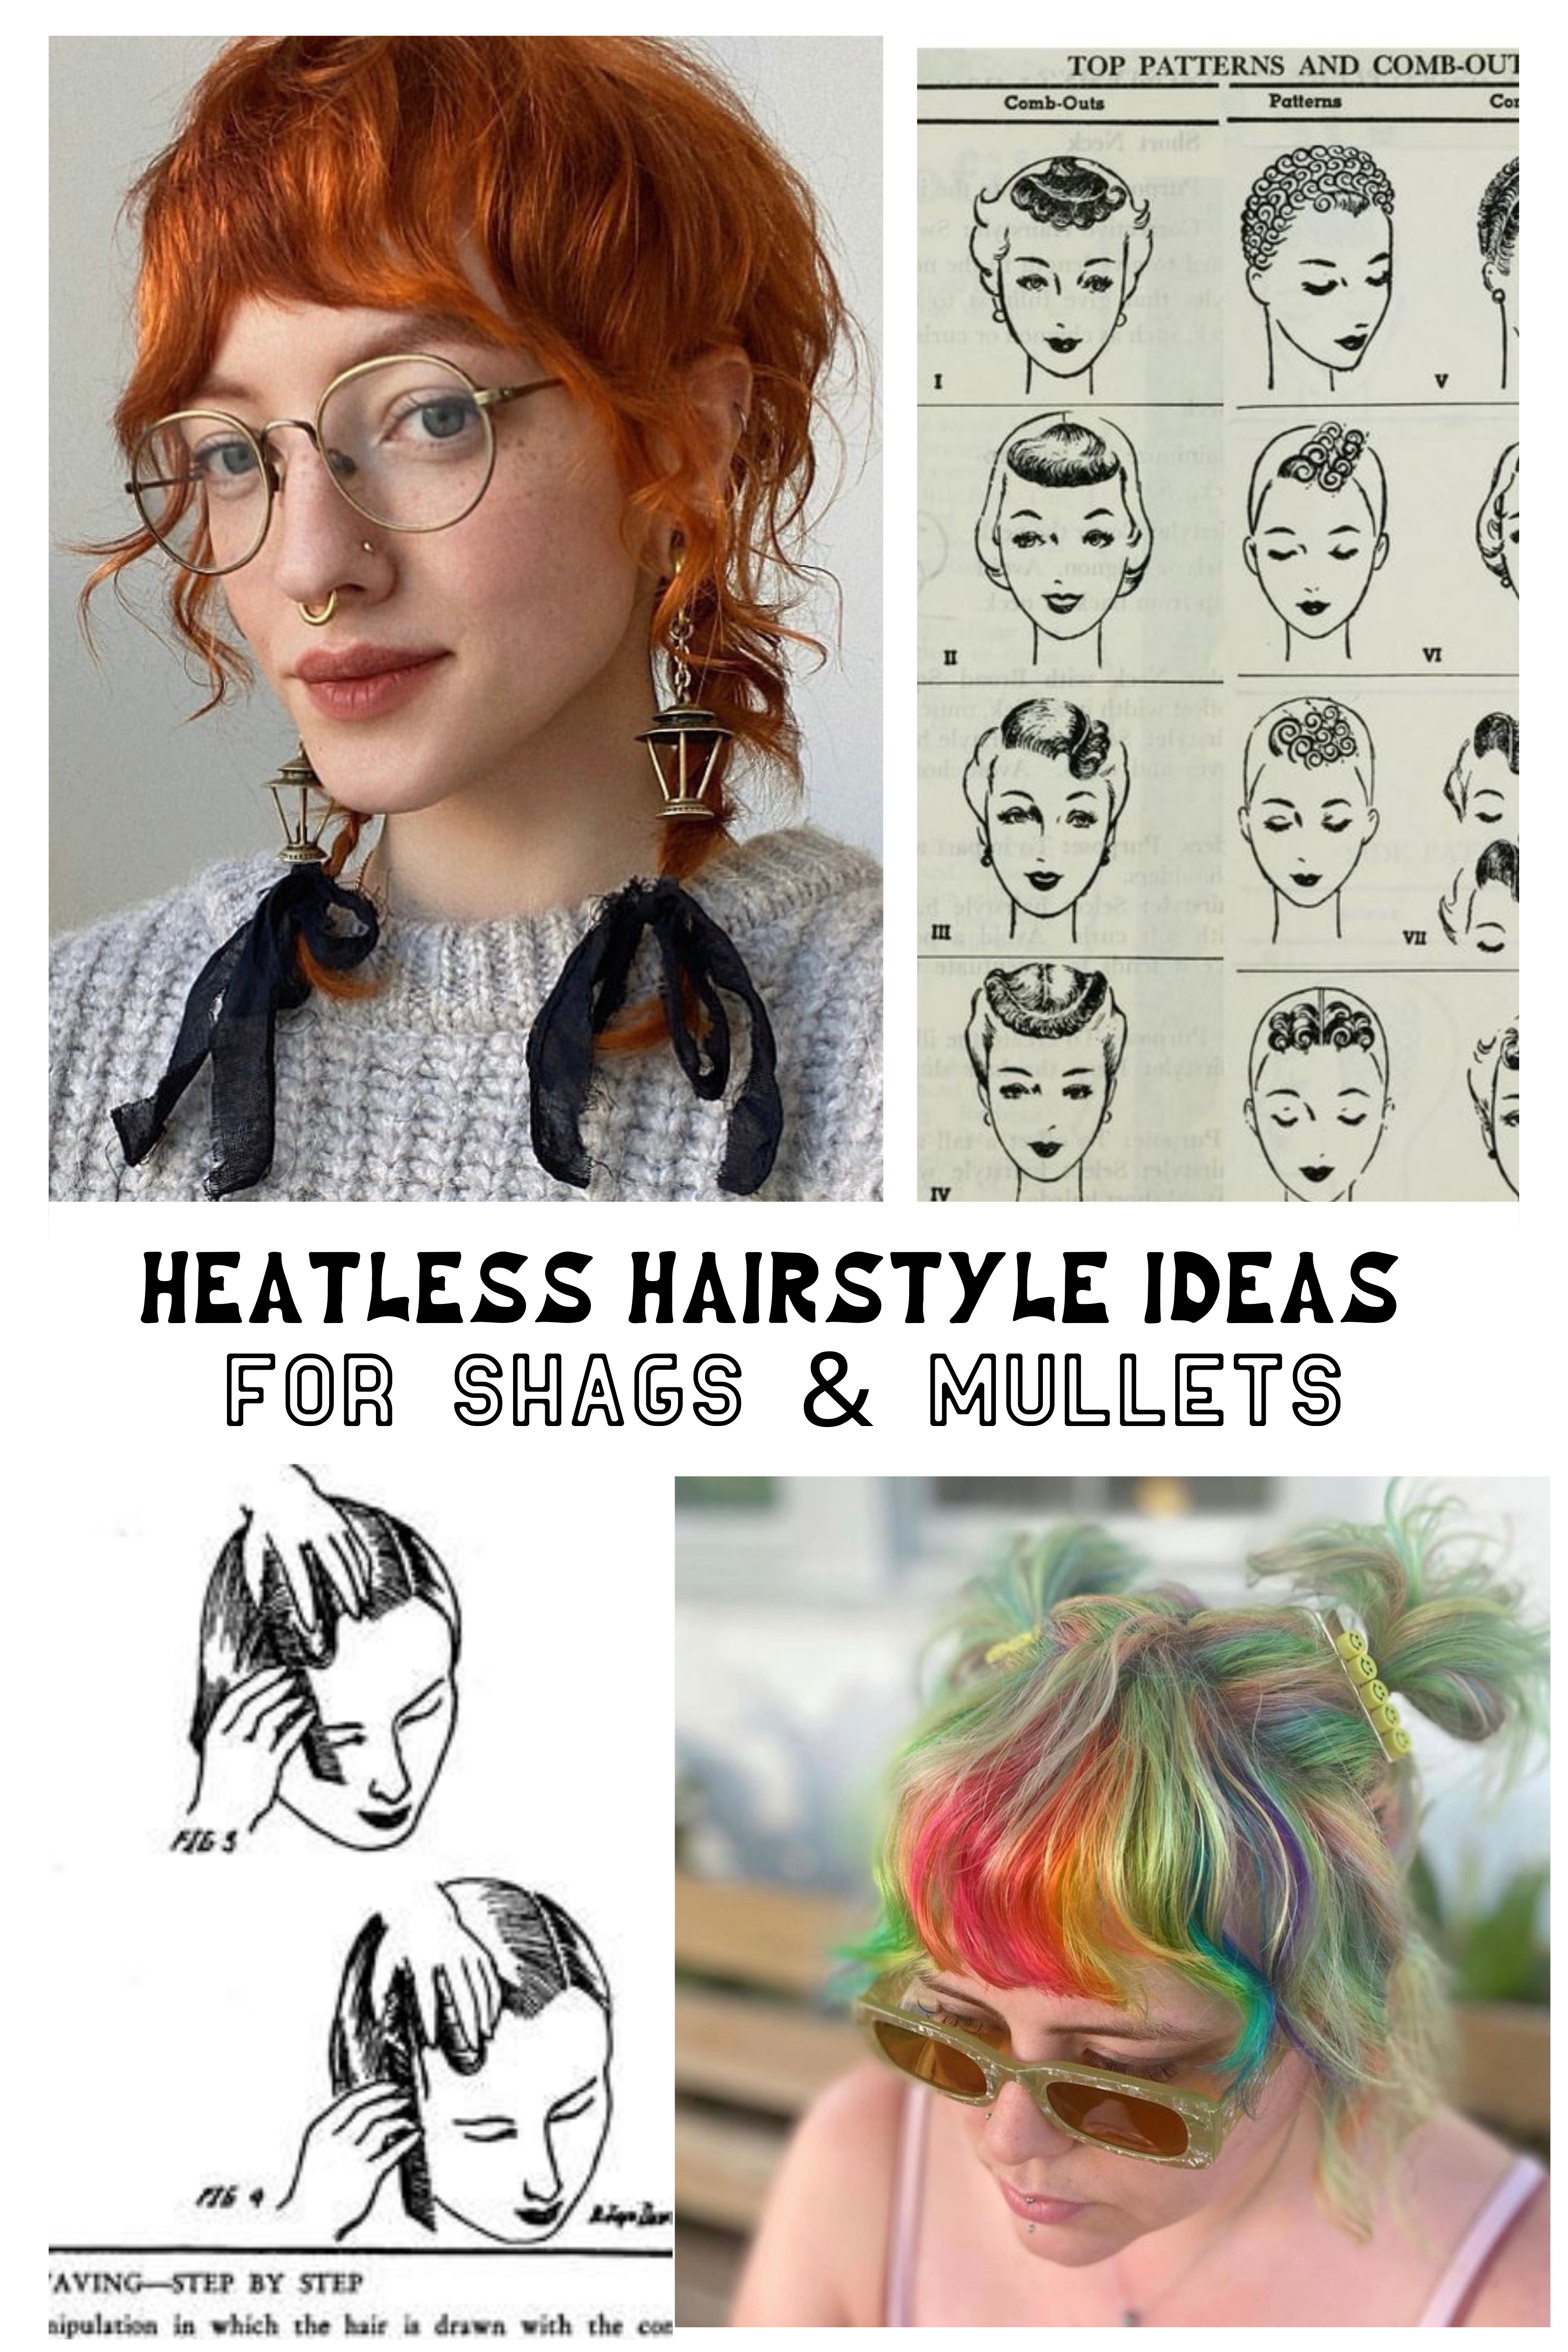 Heatless hair: mini buns | HOWTOWEAR Fashion